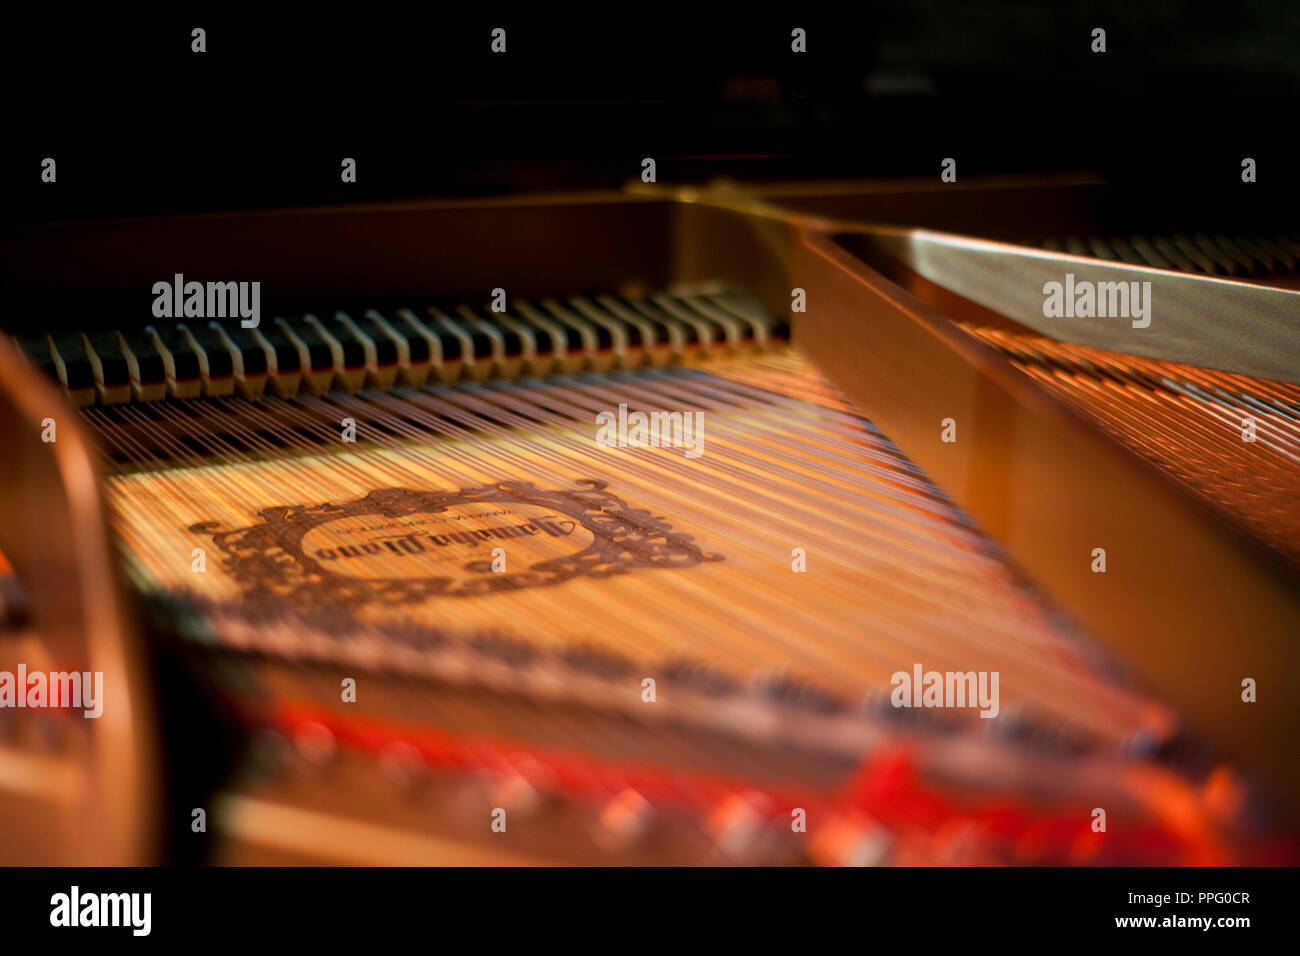 piano music Stock Photo